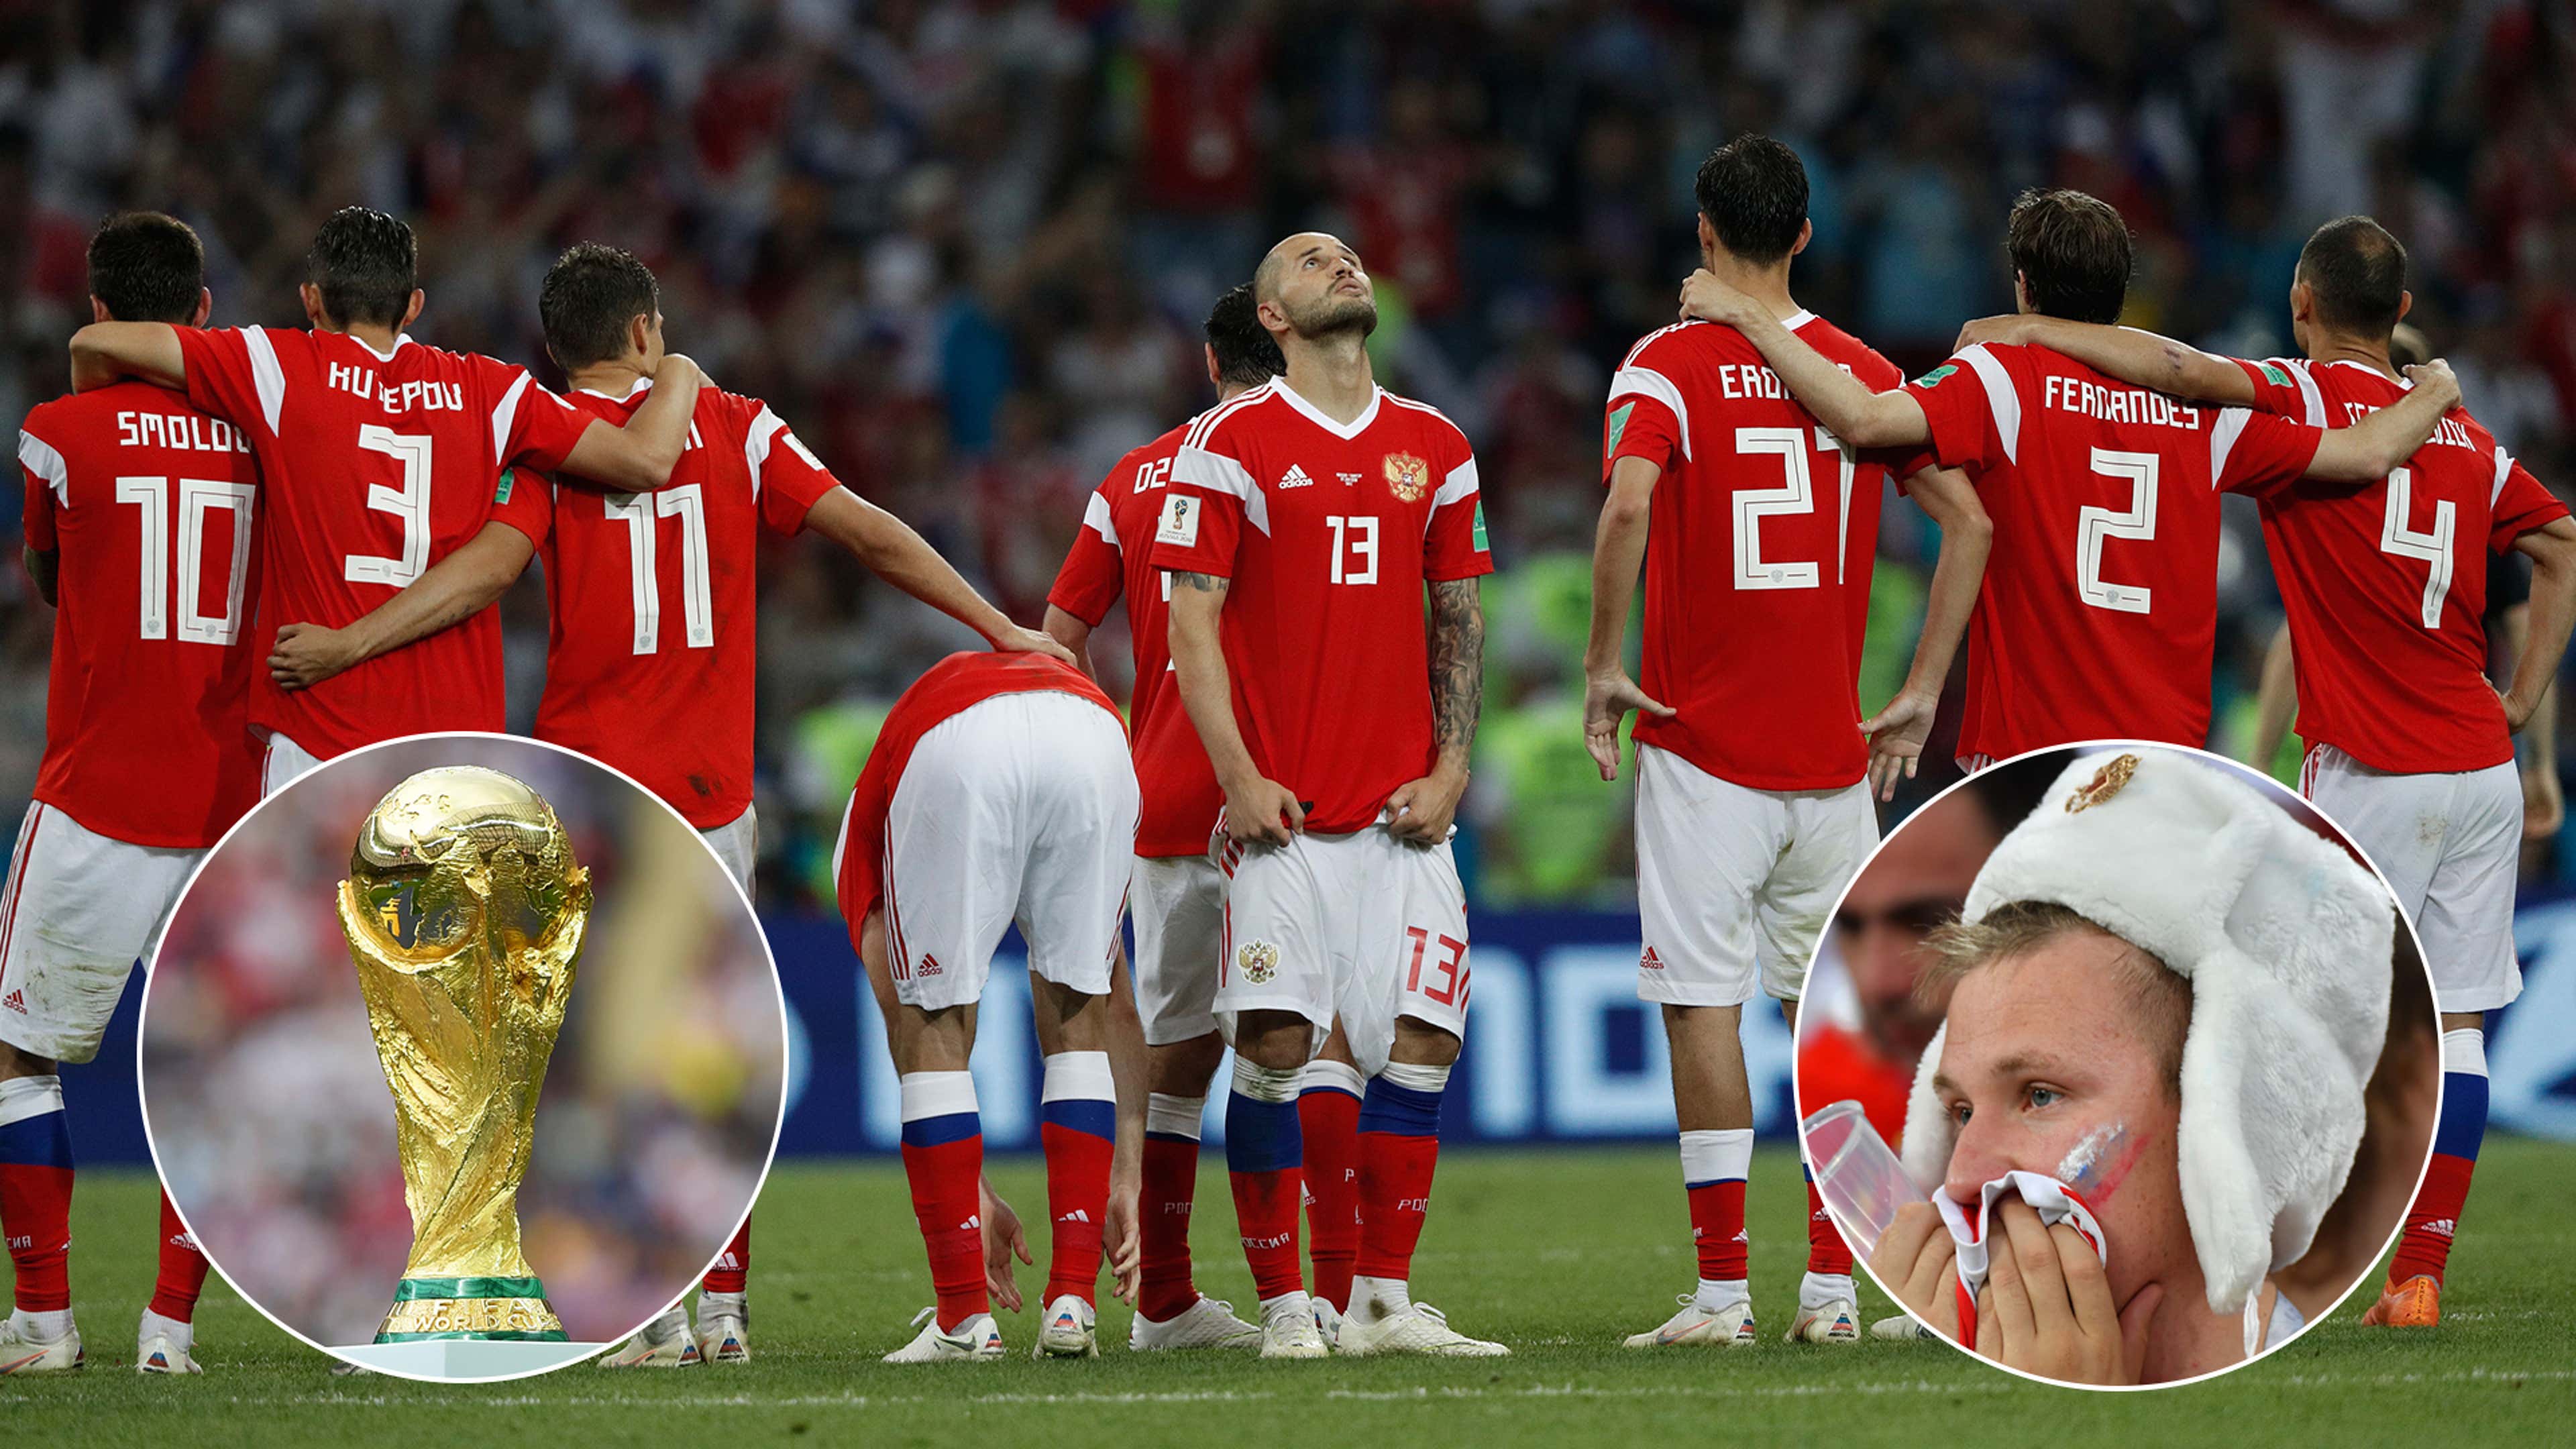 Banida pela Fifa, Rússia vai realizar copa nacional durante o Mundial, futebol russo